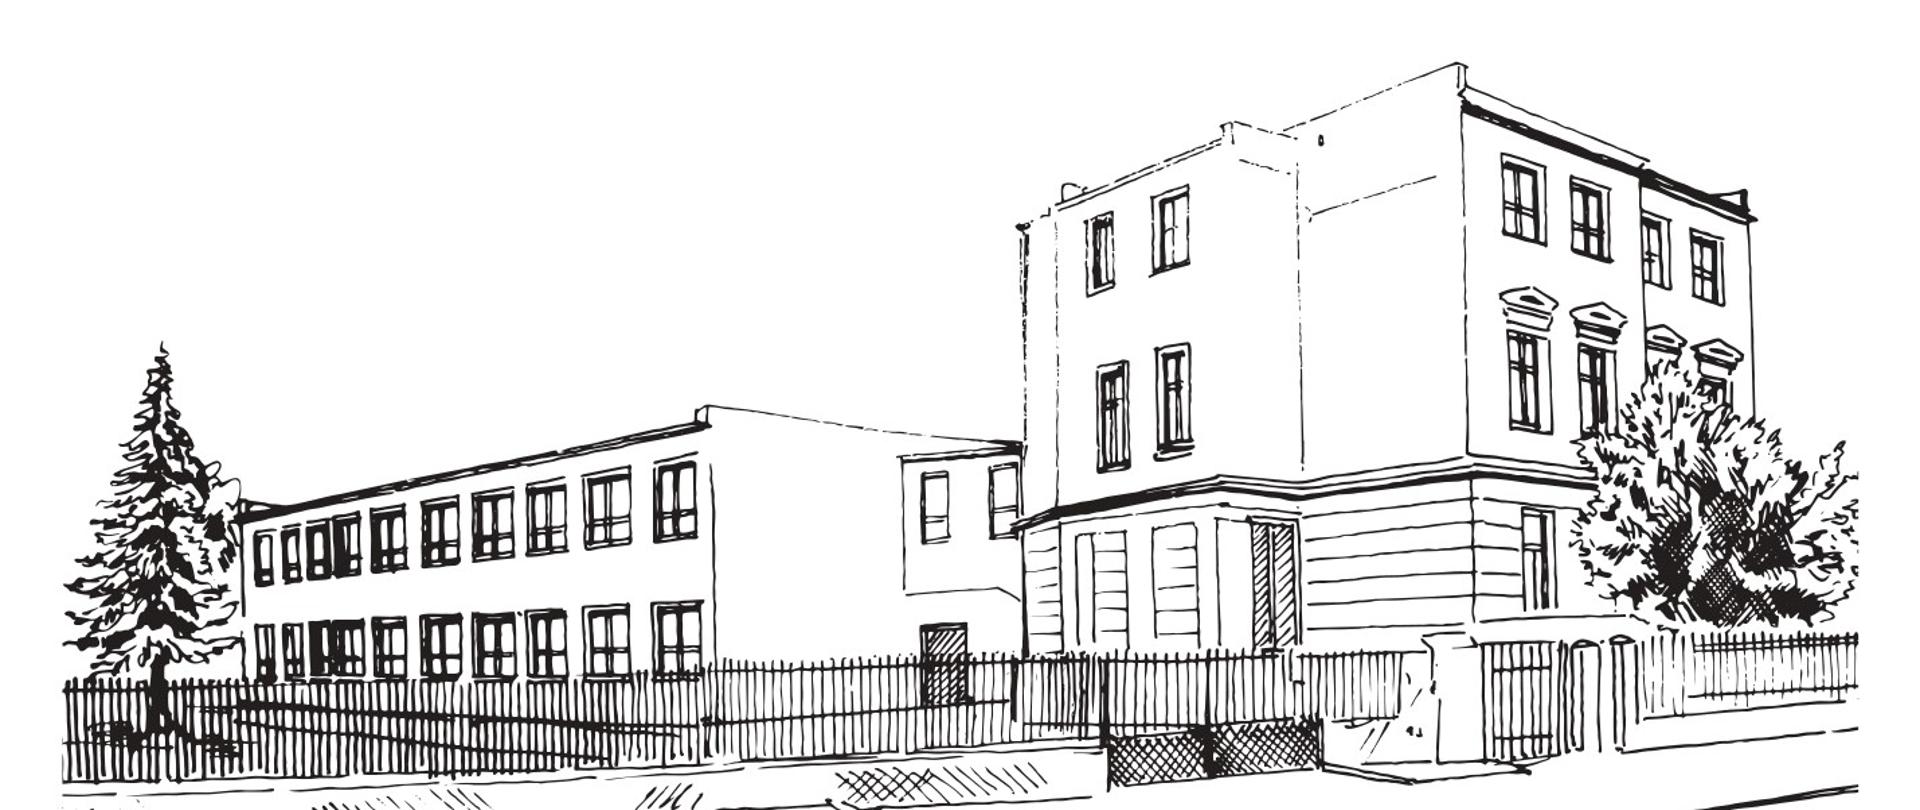 Czarno-biała grafika konturowa przedstawiająca budynek szkoły widziany od ulicy Jana Pawła II